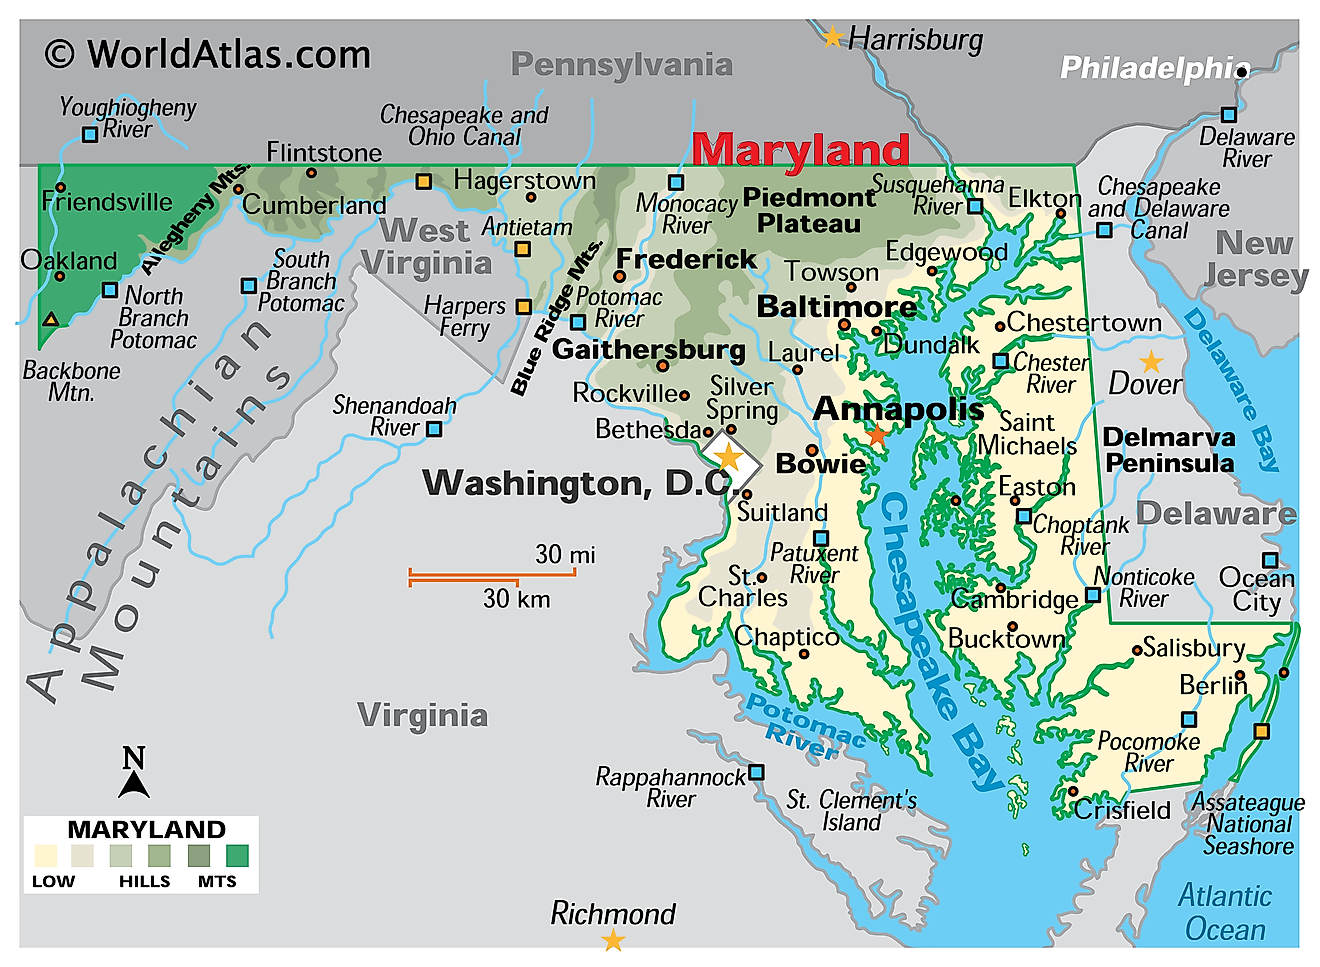 Carte physique du Maryland. Elle montre les caractéristiques physiques du Maryland, notamment ses chaînes de montagnes, ses principaux cours d'eau, la péninsule de Delmarva et la baie de Chesapeake.